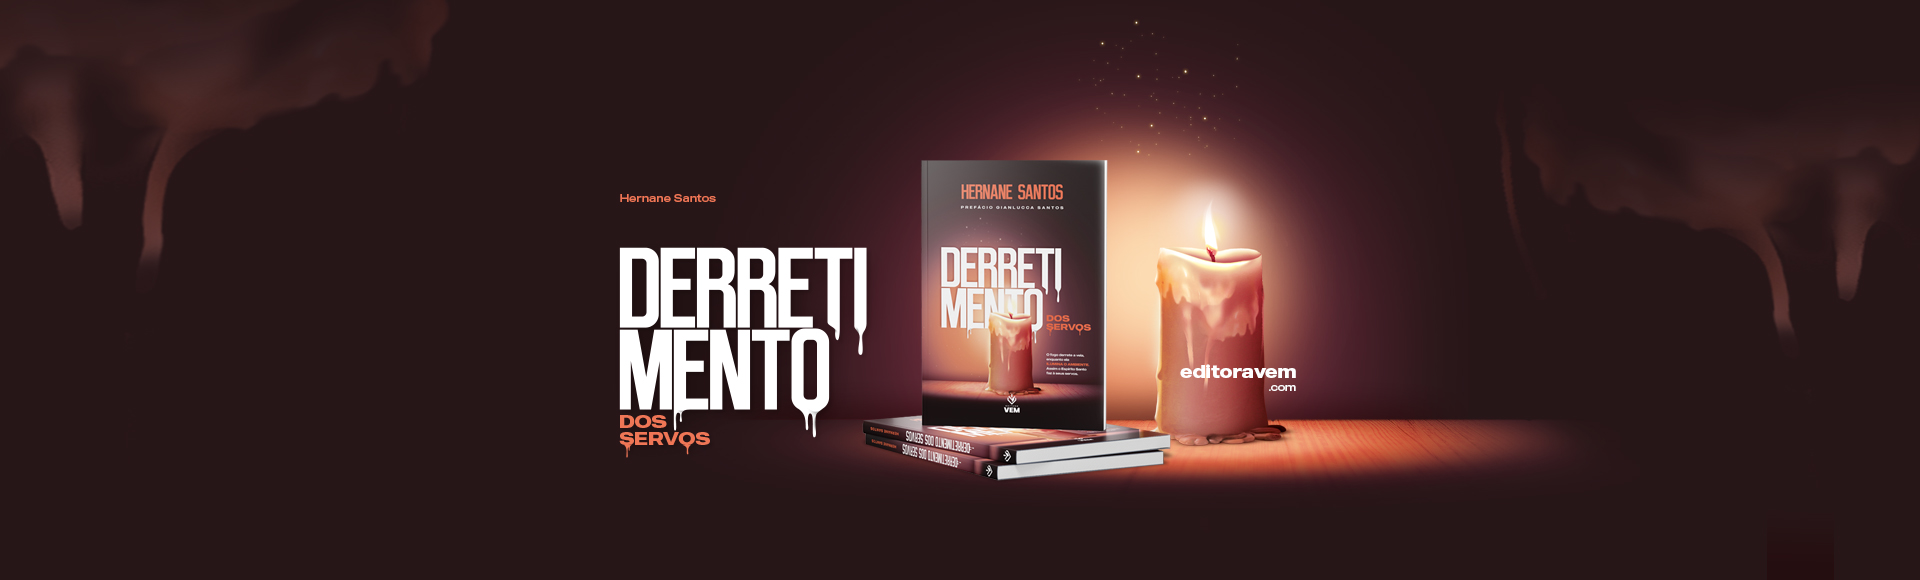 Livro - Derretimento dos Servos - Hernane Santos